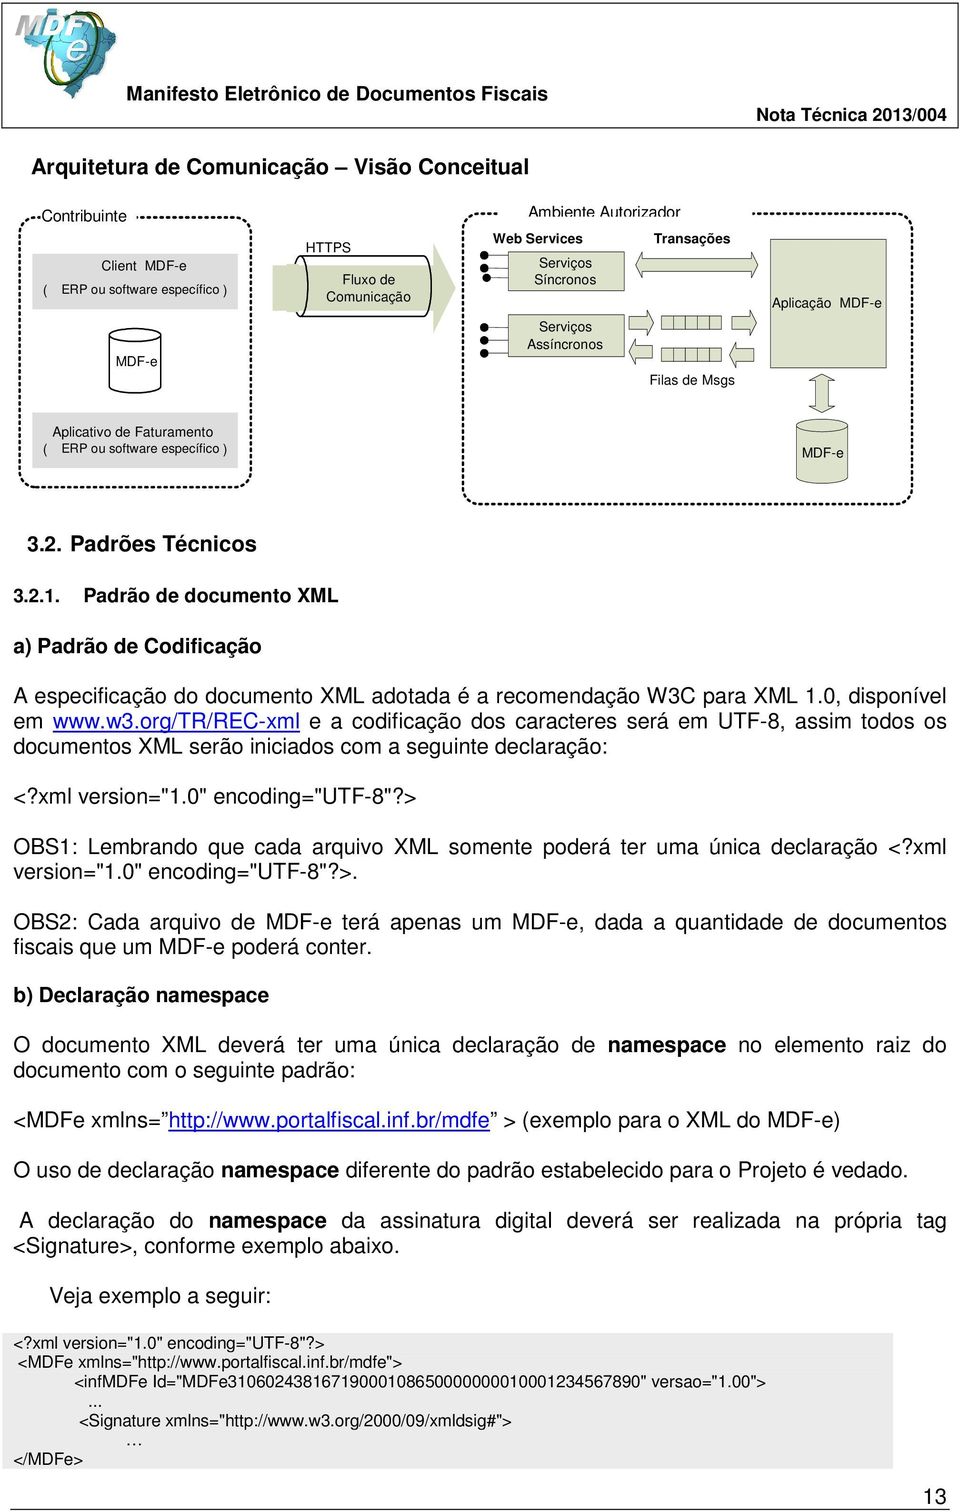 Padrão de documento XML a) Padrão de Codificação A especificação do documento XML adotada é a recomendação W3C para XML 1.0, disponível em www.w3.